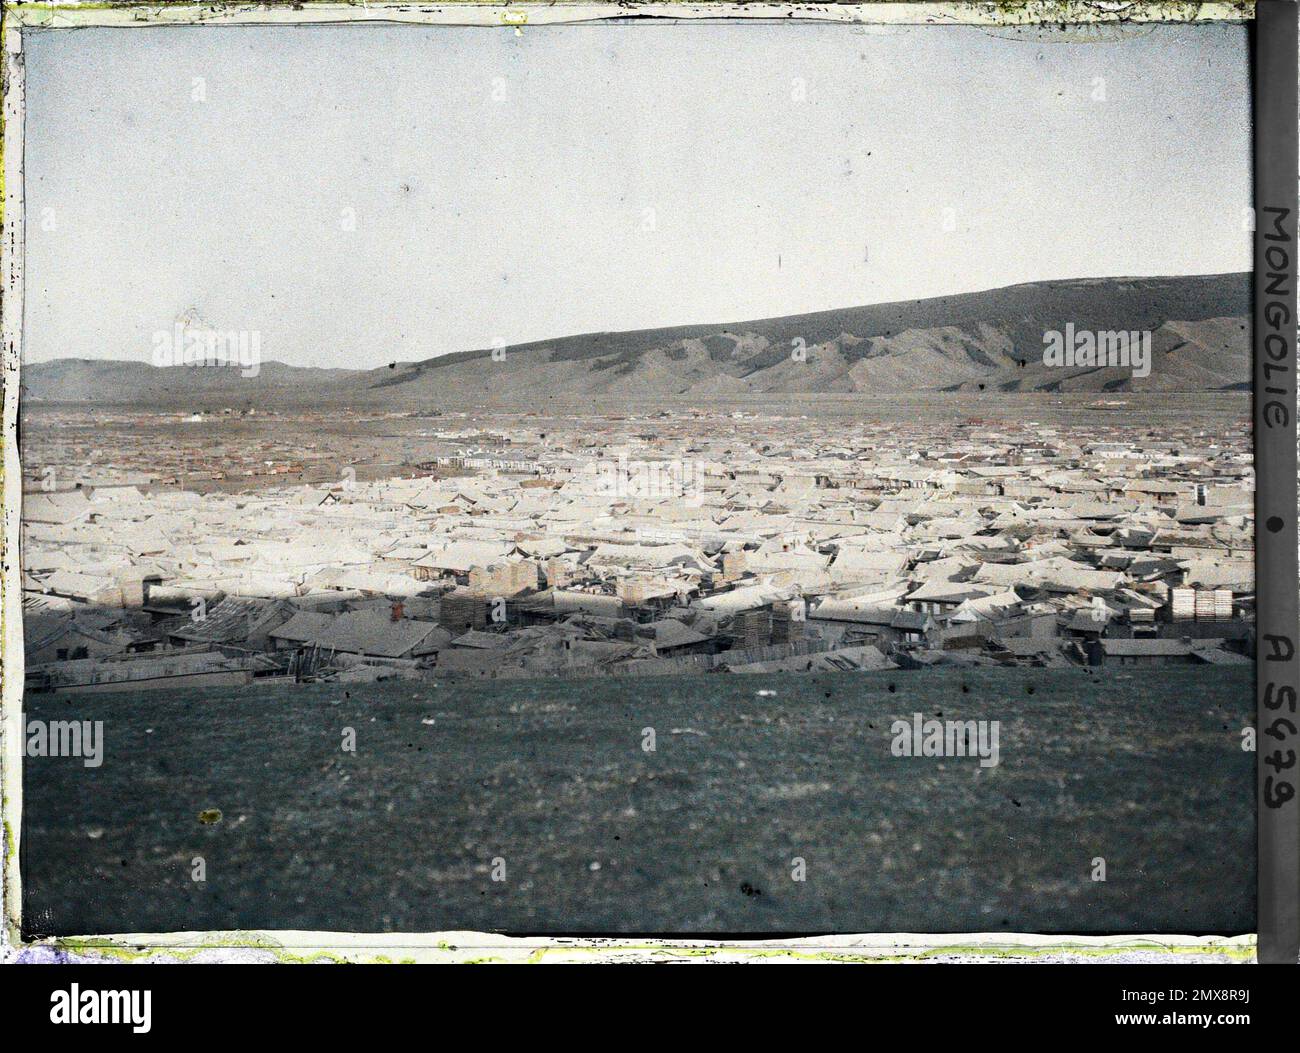 Orga, Mongolie vue panoramique sur Baruun Damnuarchin, le quartier commerçant situé entre la partie centrale de la ville (Zün Khüree) et la colline de Gandan , 1913 - Mongolie - Stéphane Passet - (6-25 juillet) Banque D'Images